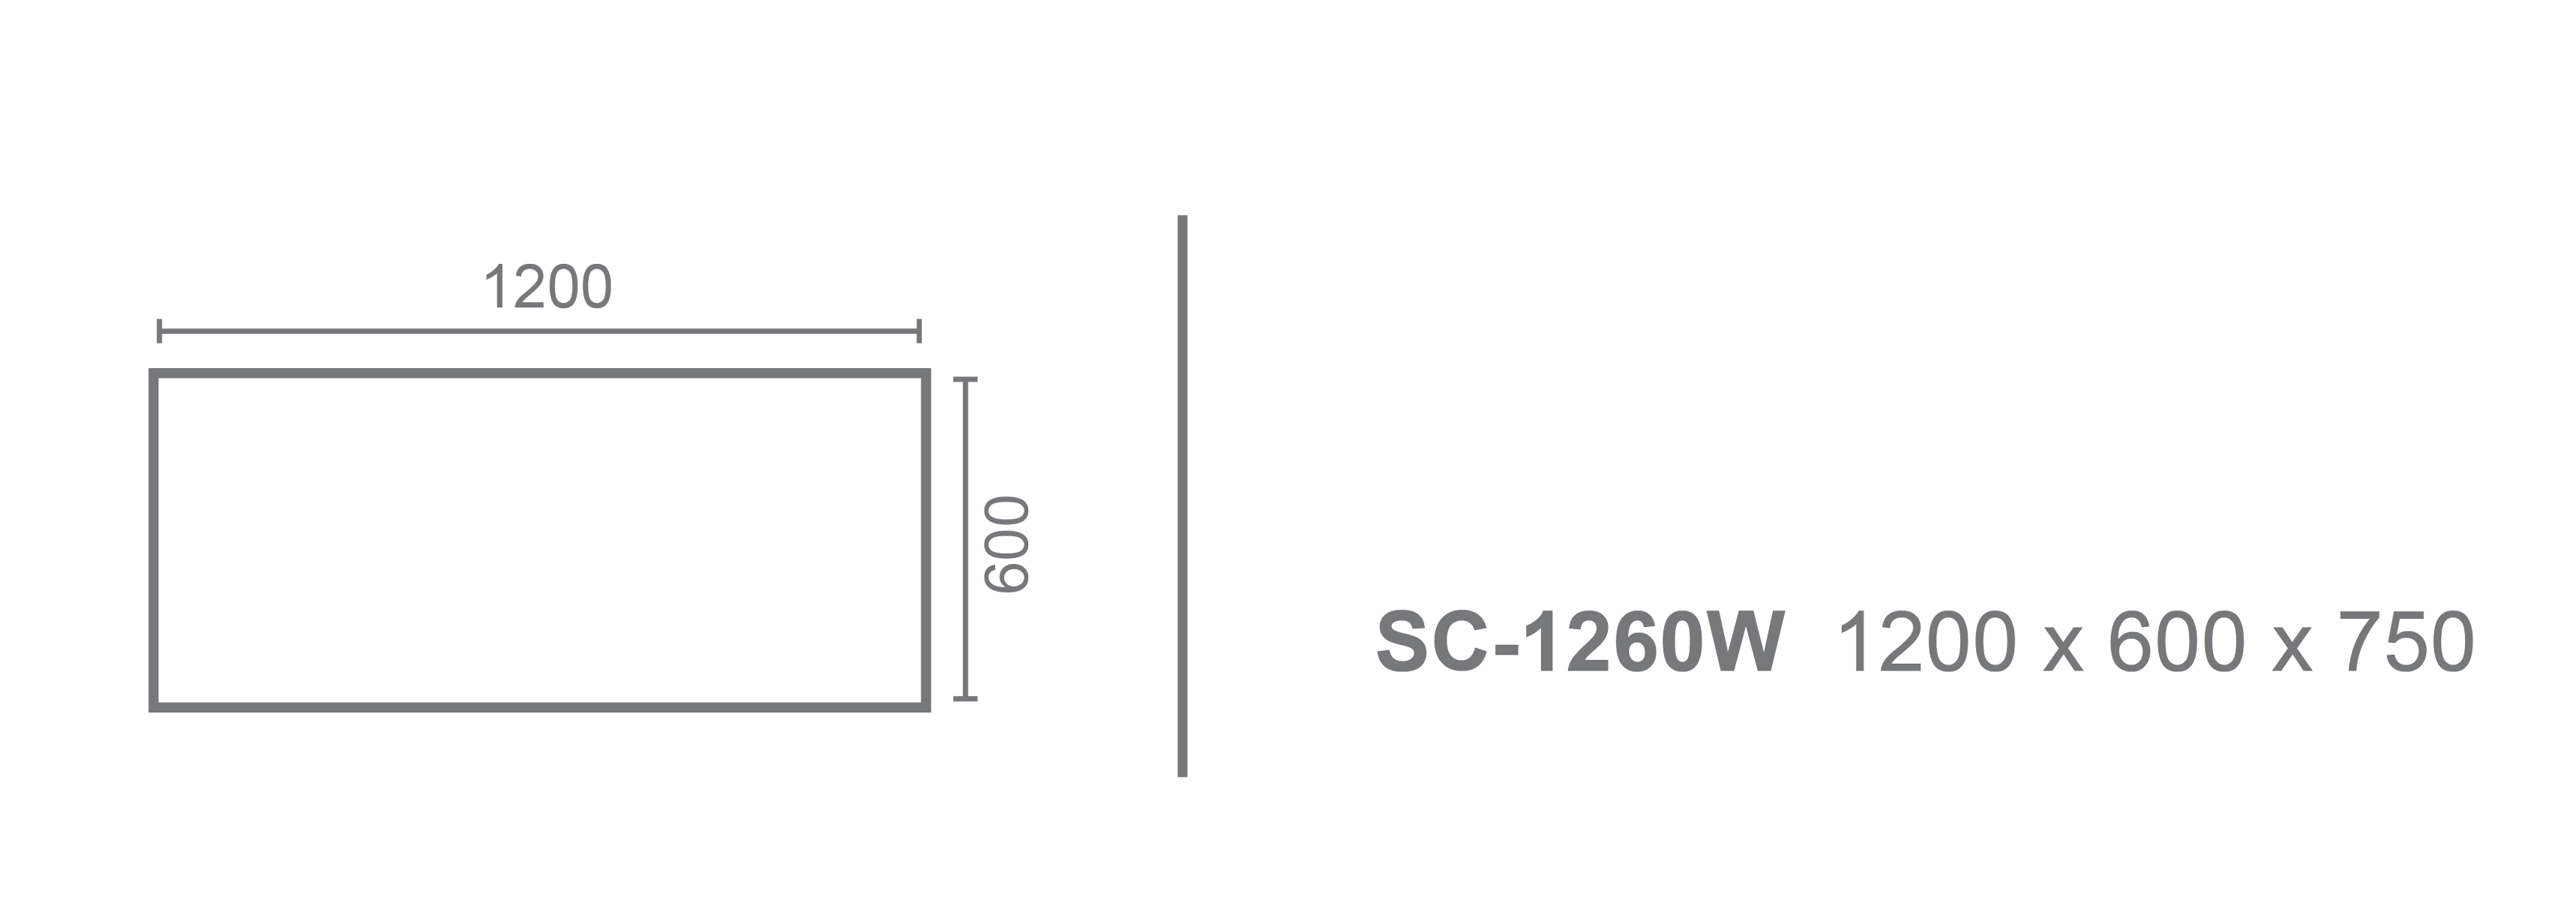 sc1260W